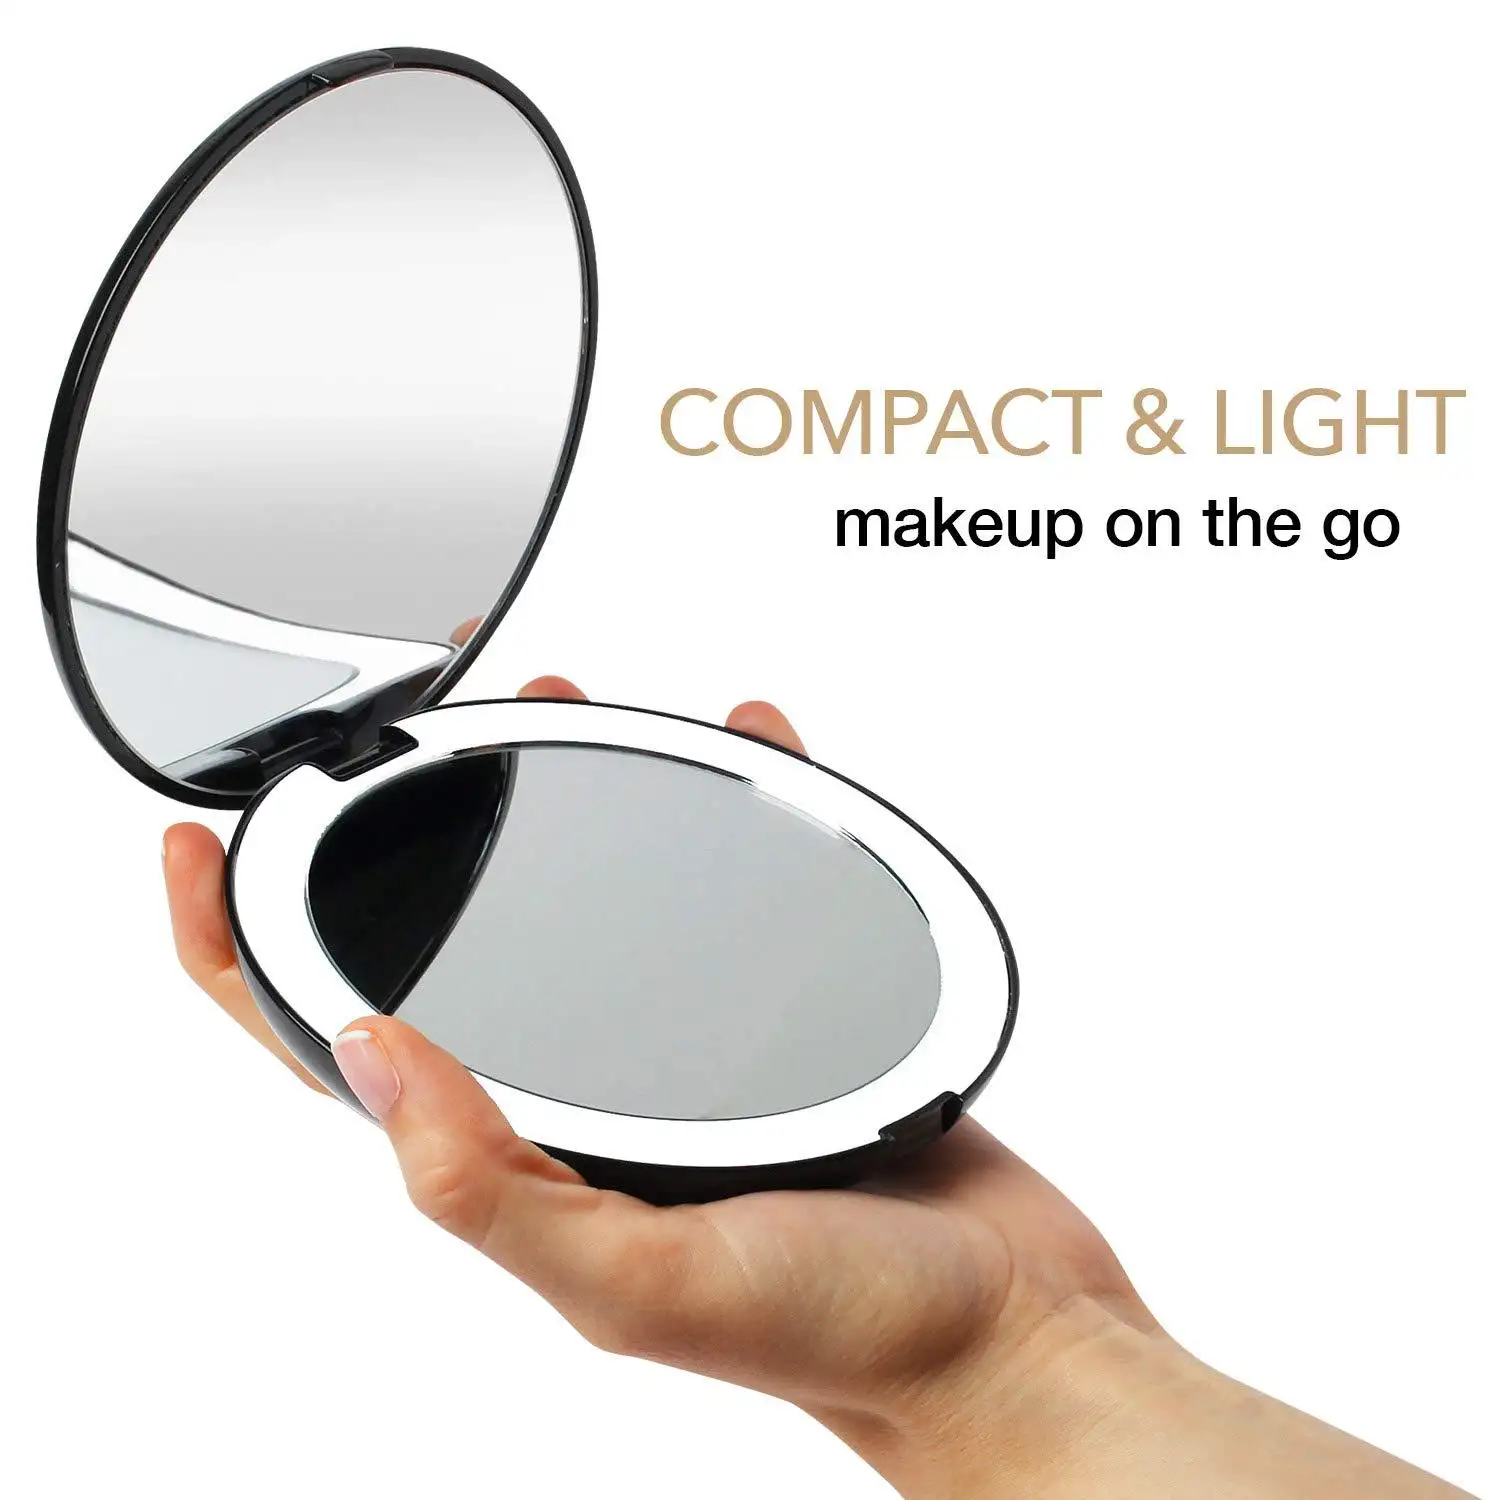 Двухстороннее зеркало для макияжа со светодиодной подсветкой, увеличение 1x/10x, компактное портативное зеркало для сумки, кошелька, кармана